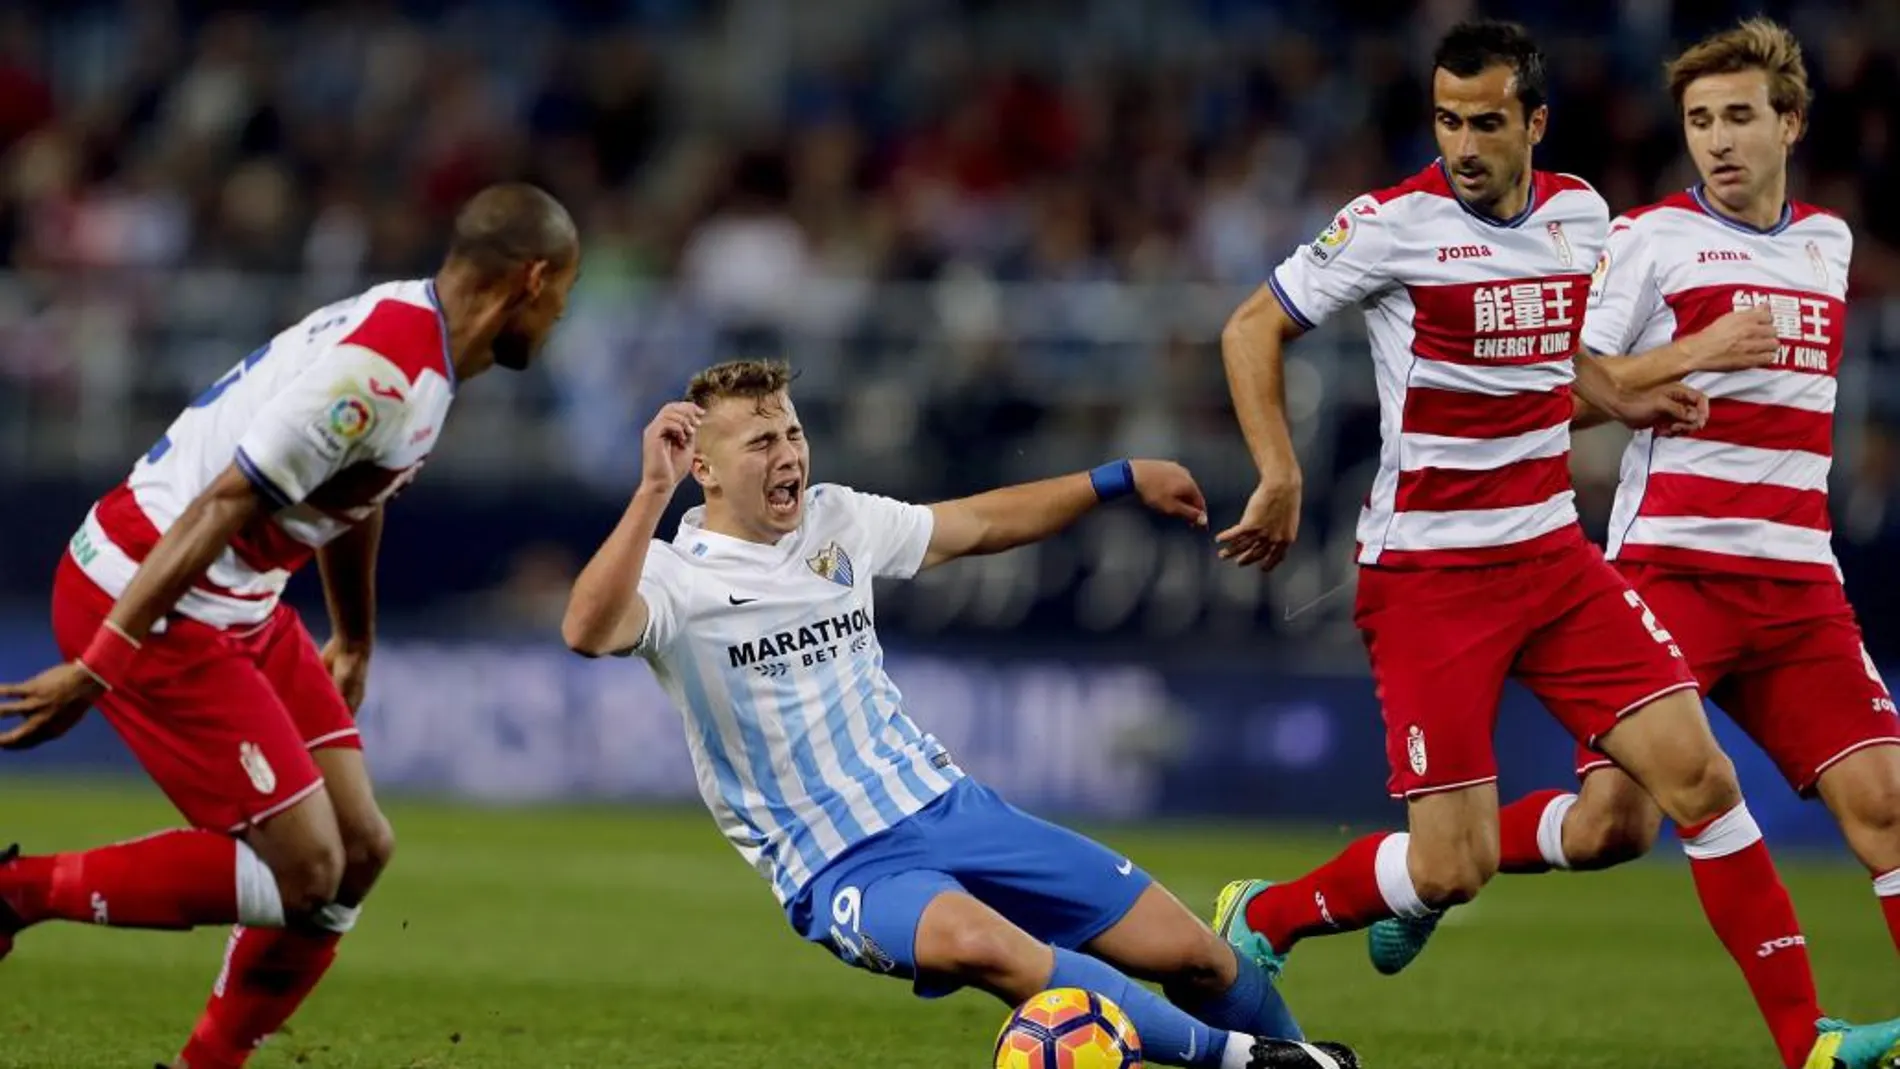 El centrocampista del Málaga CF Javier Ontiveros (2i) cae ante los jugadores del Granada CF, el defensa brasileño Gabriel Silva (i), el defensa francés Matthieu Saunier (2d) y el centrocampista Sergi Samper